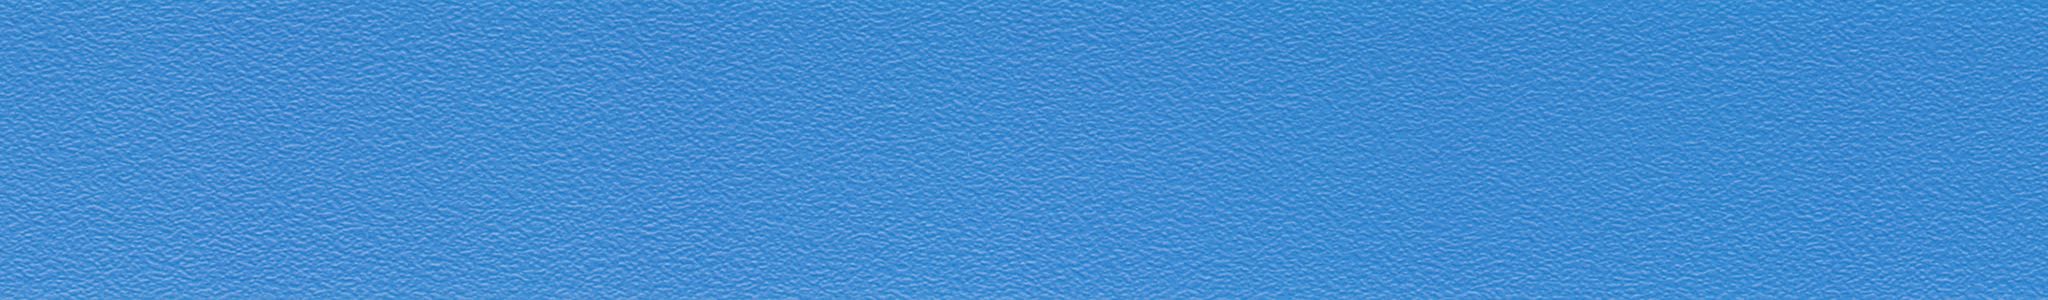 ABS U 525 modrá delft perlička 42x2mm HU 15525